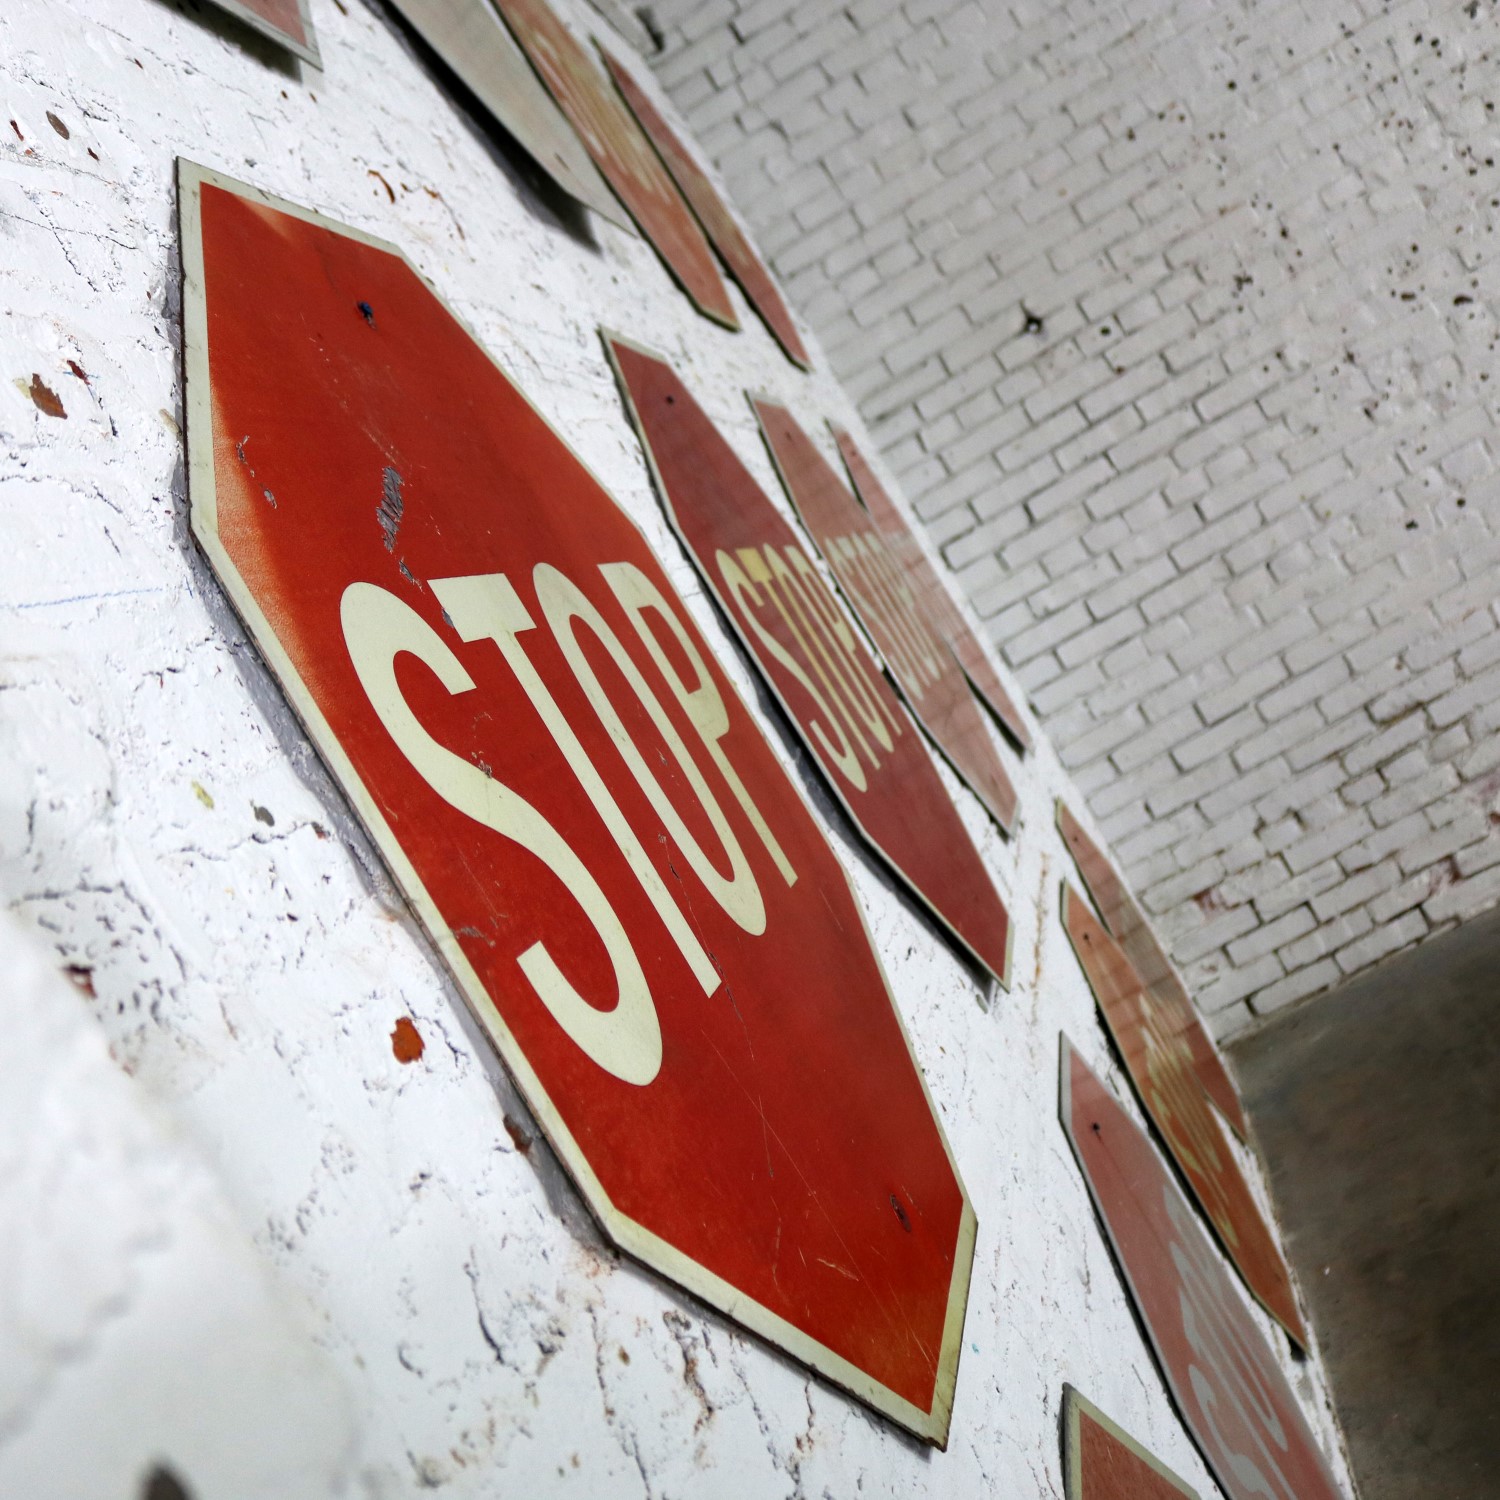 Twelve Vintage Metal Stop Signs